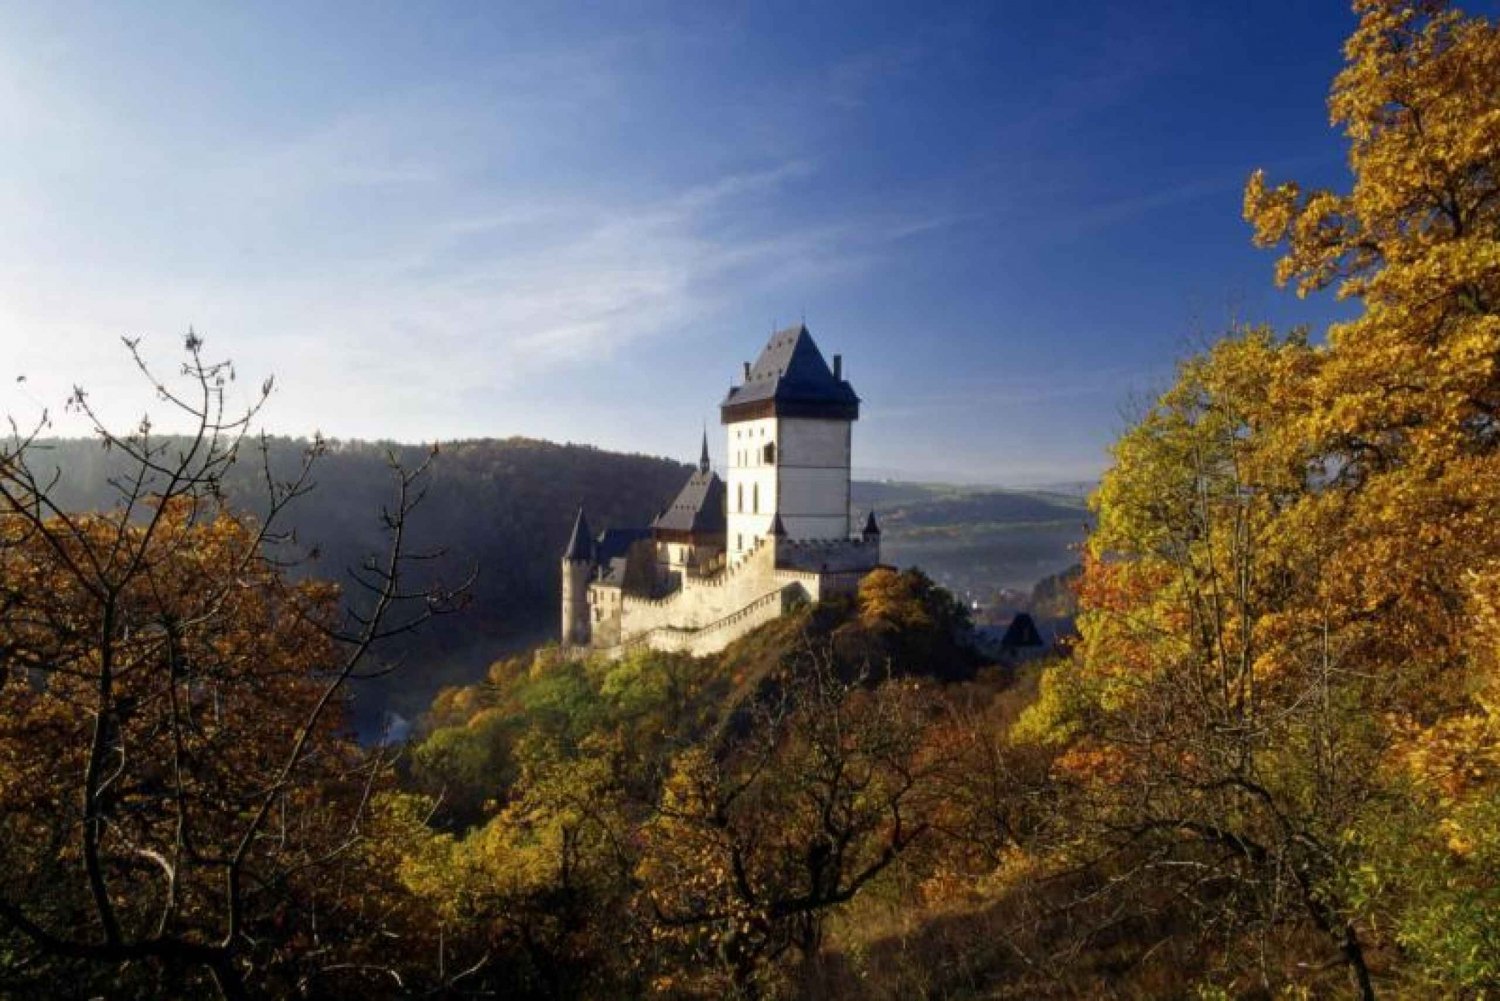 De Praga: Excursão Castelo de Karlstein e Ingresso Sem Fila